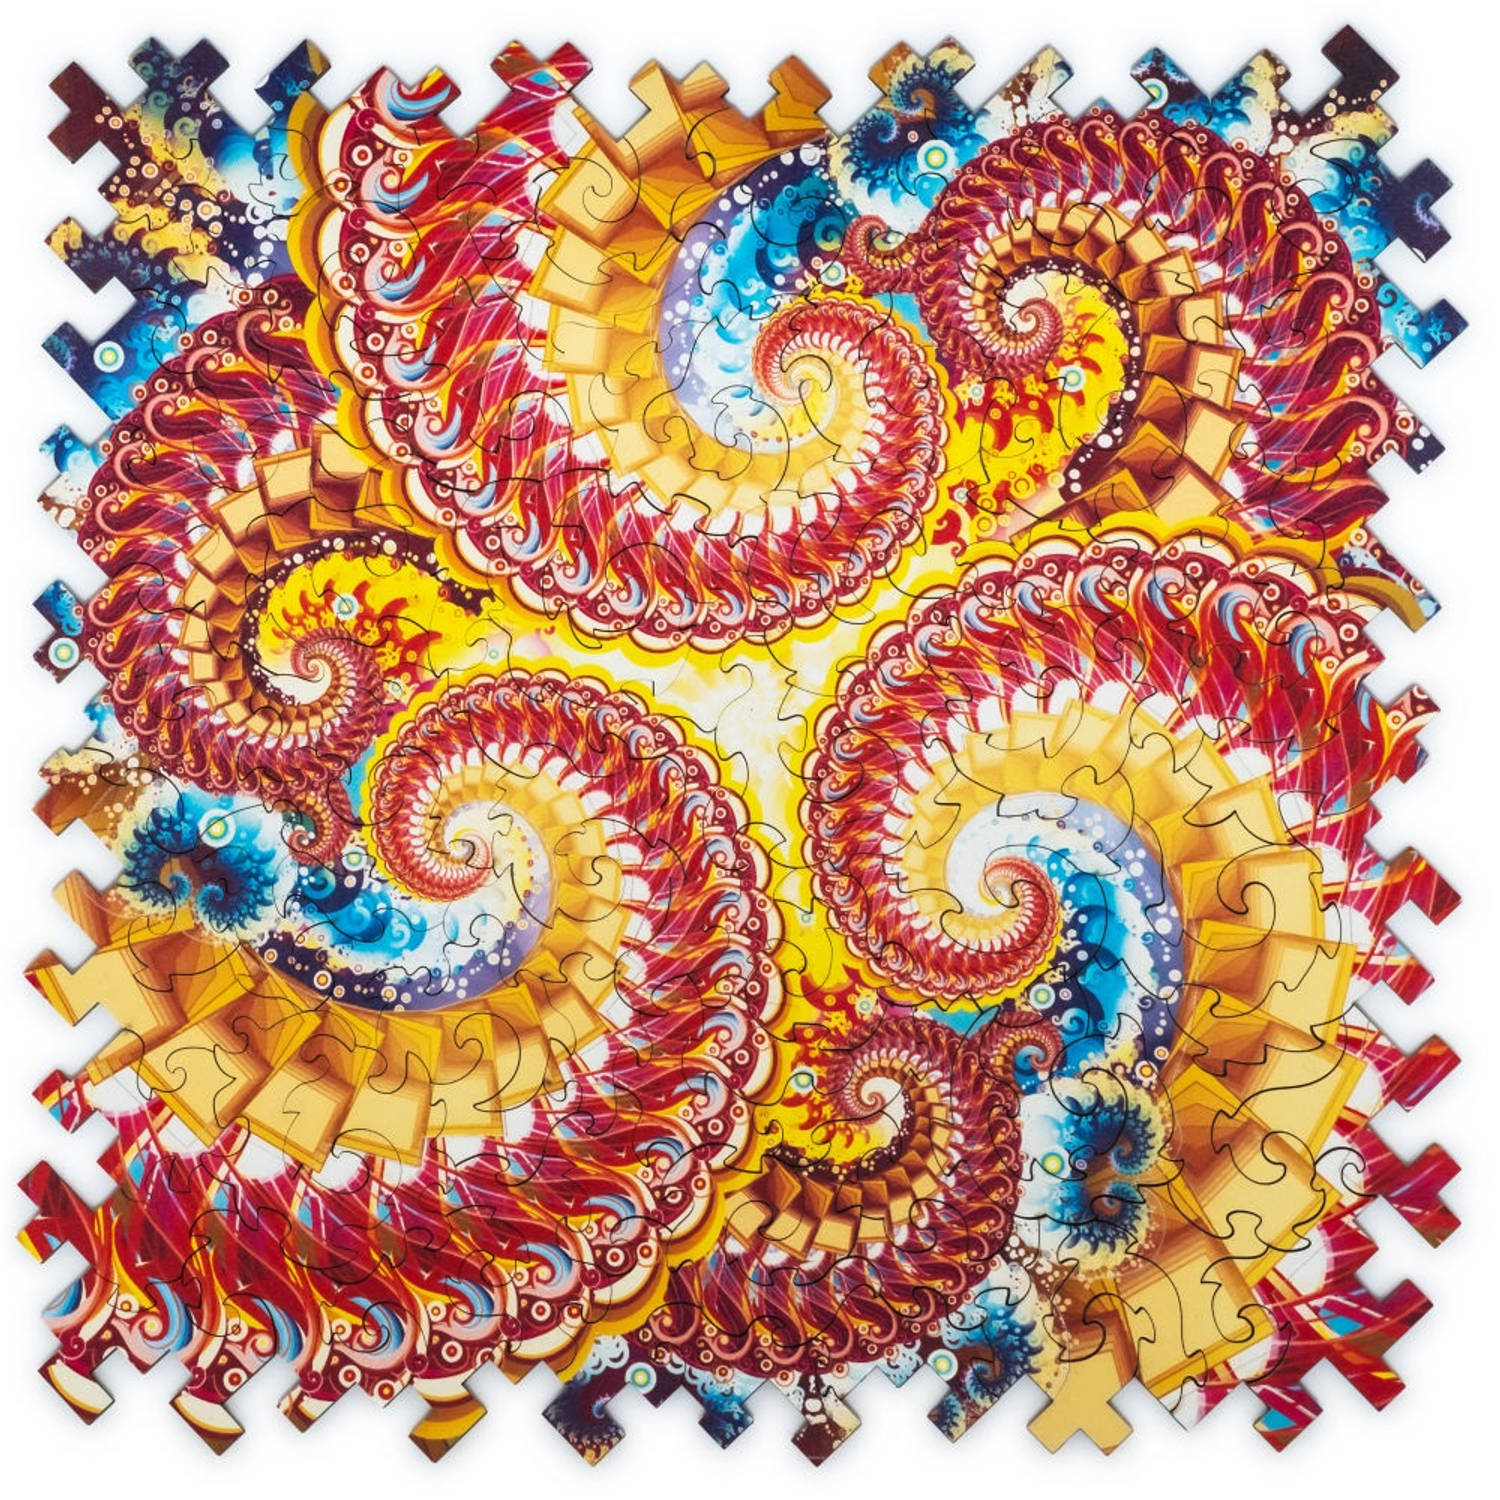 UNIDRAGON Houten Puzzel Abstractie - Fractale Immersie - 100 stukjes - 21,7x21,7 cm